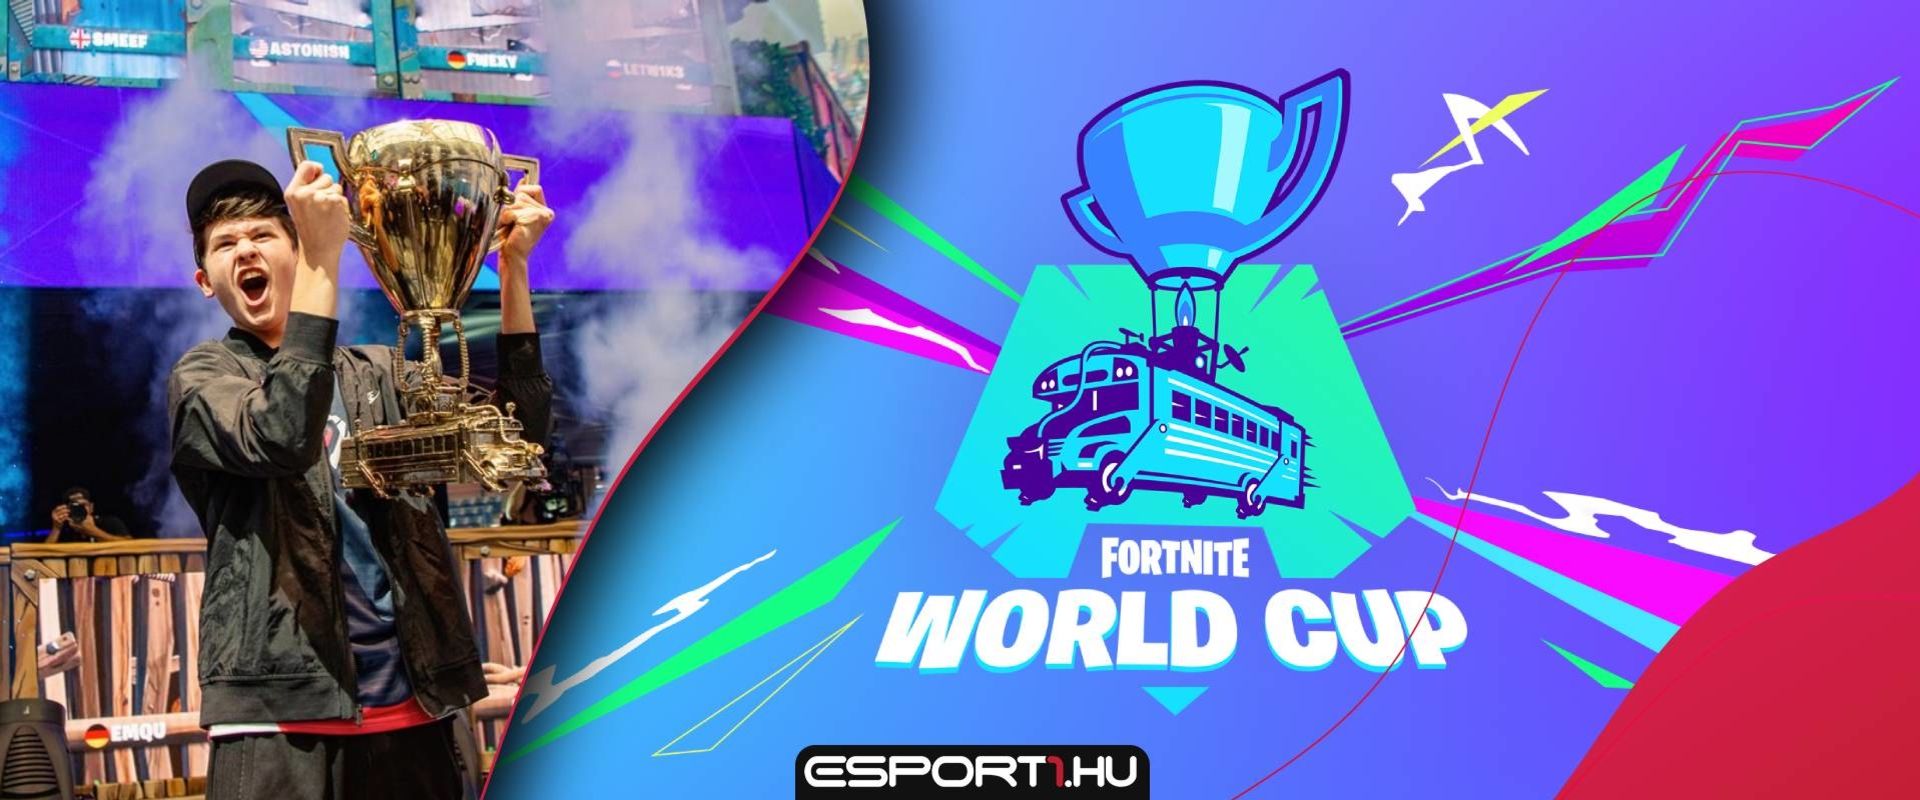 Rossz hírt közölt az Epic Games a jövő évi Fortnite World Cupról